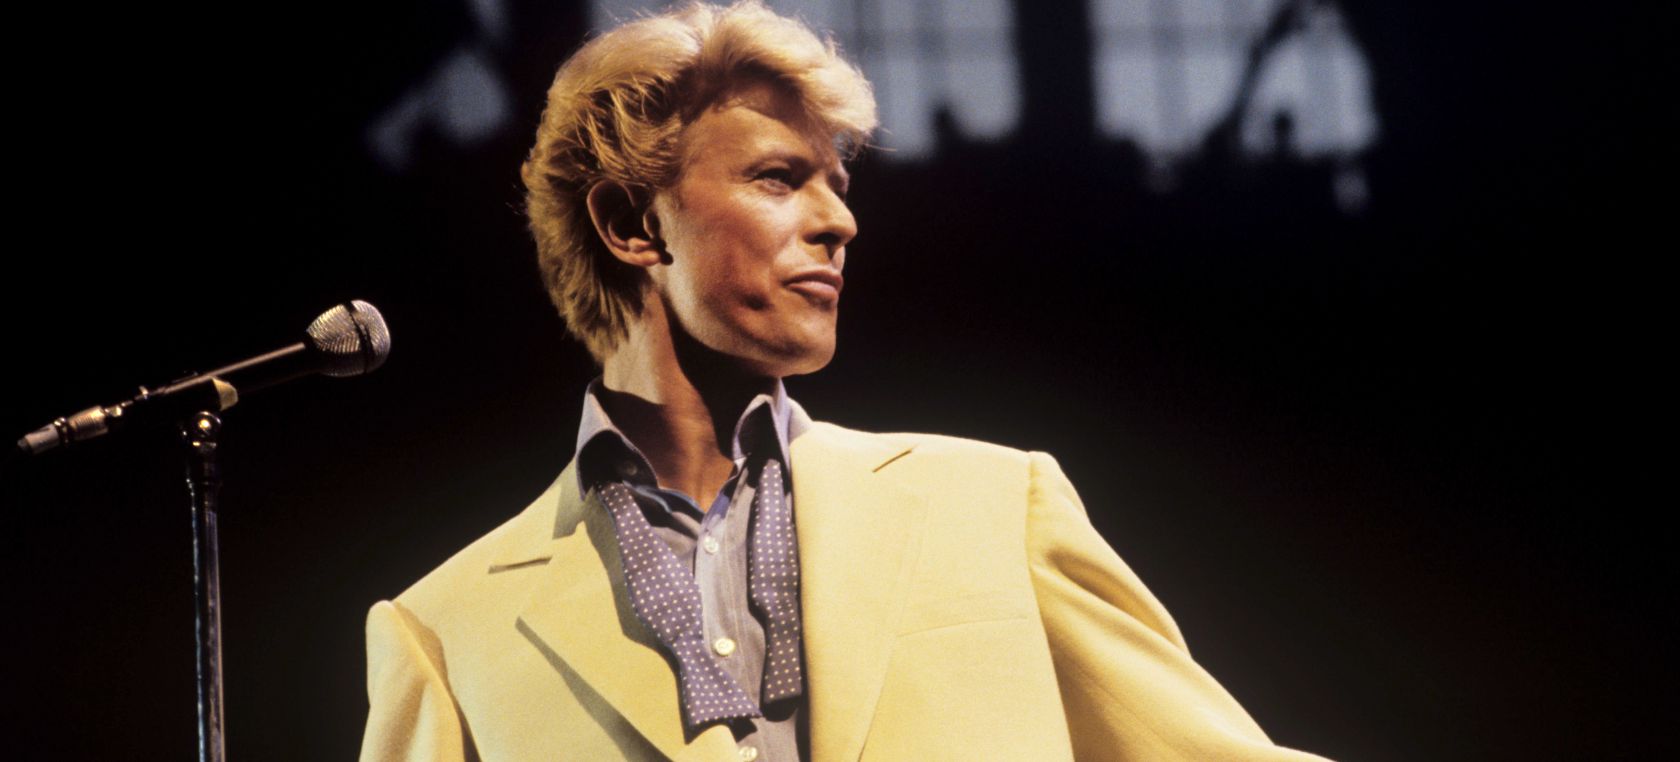 David Bowie: ¿Es ‘Let’s dance’ un disco maldito, como cree Nile Rodgers?